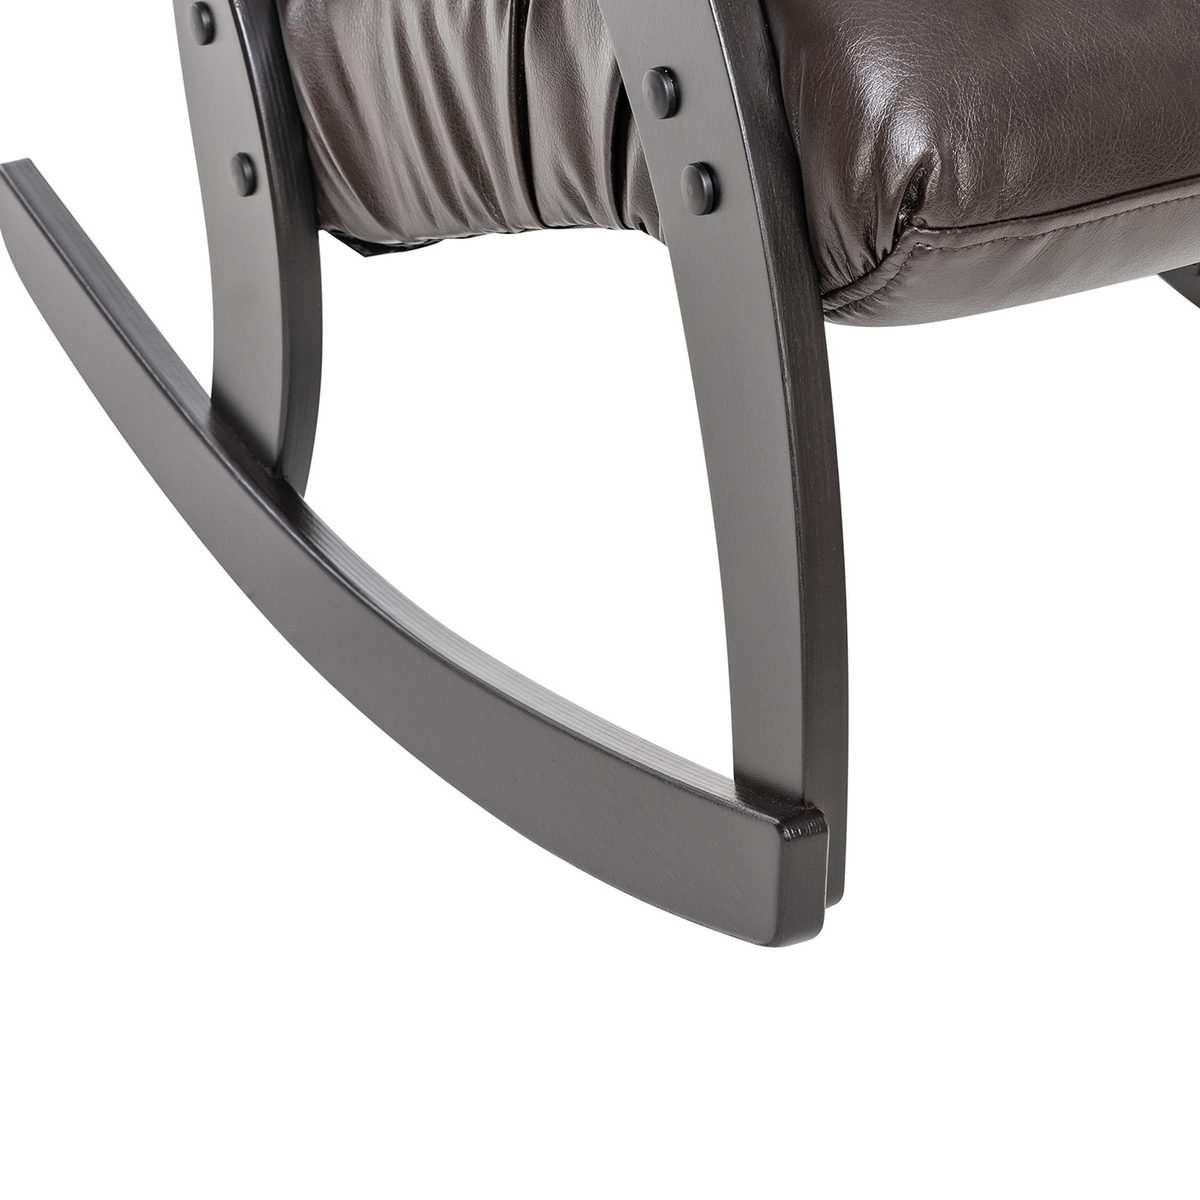 Кресло-качалка Модель 67 (Импэкс). Цвет каркаса: Венге; Цвет обивки: Oregon perlamutr 120